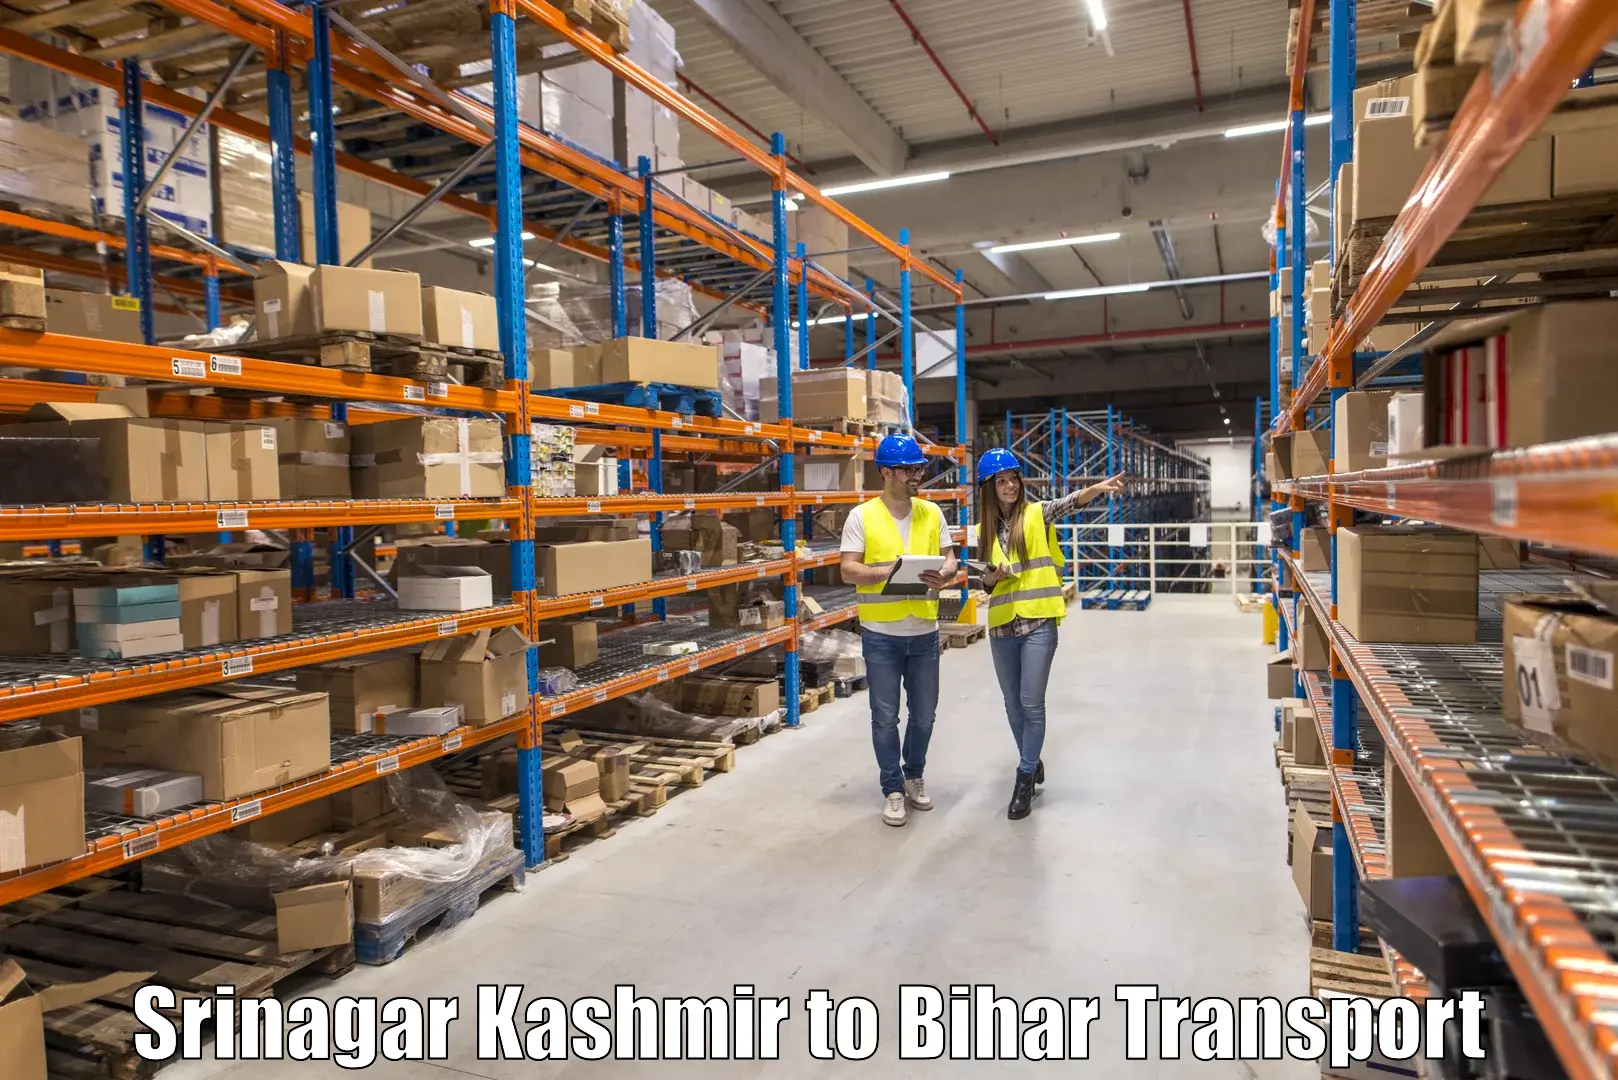 Bike shipping service Srinagar Kashmir to Piro